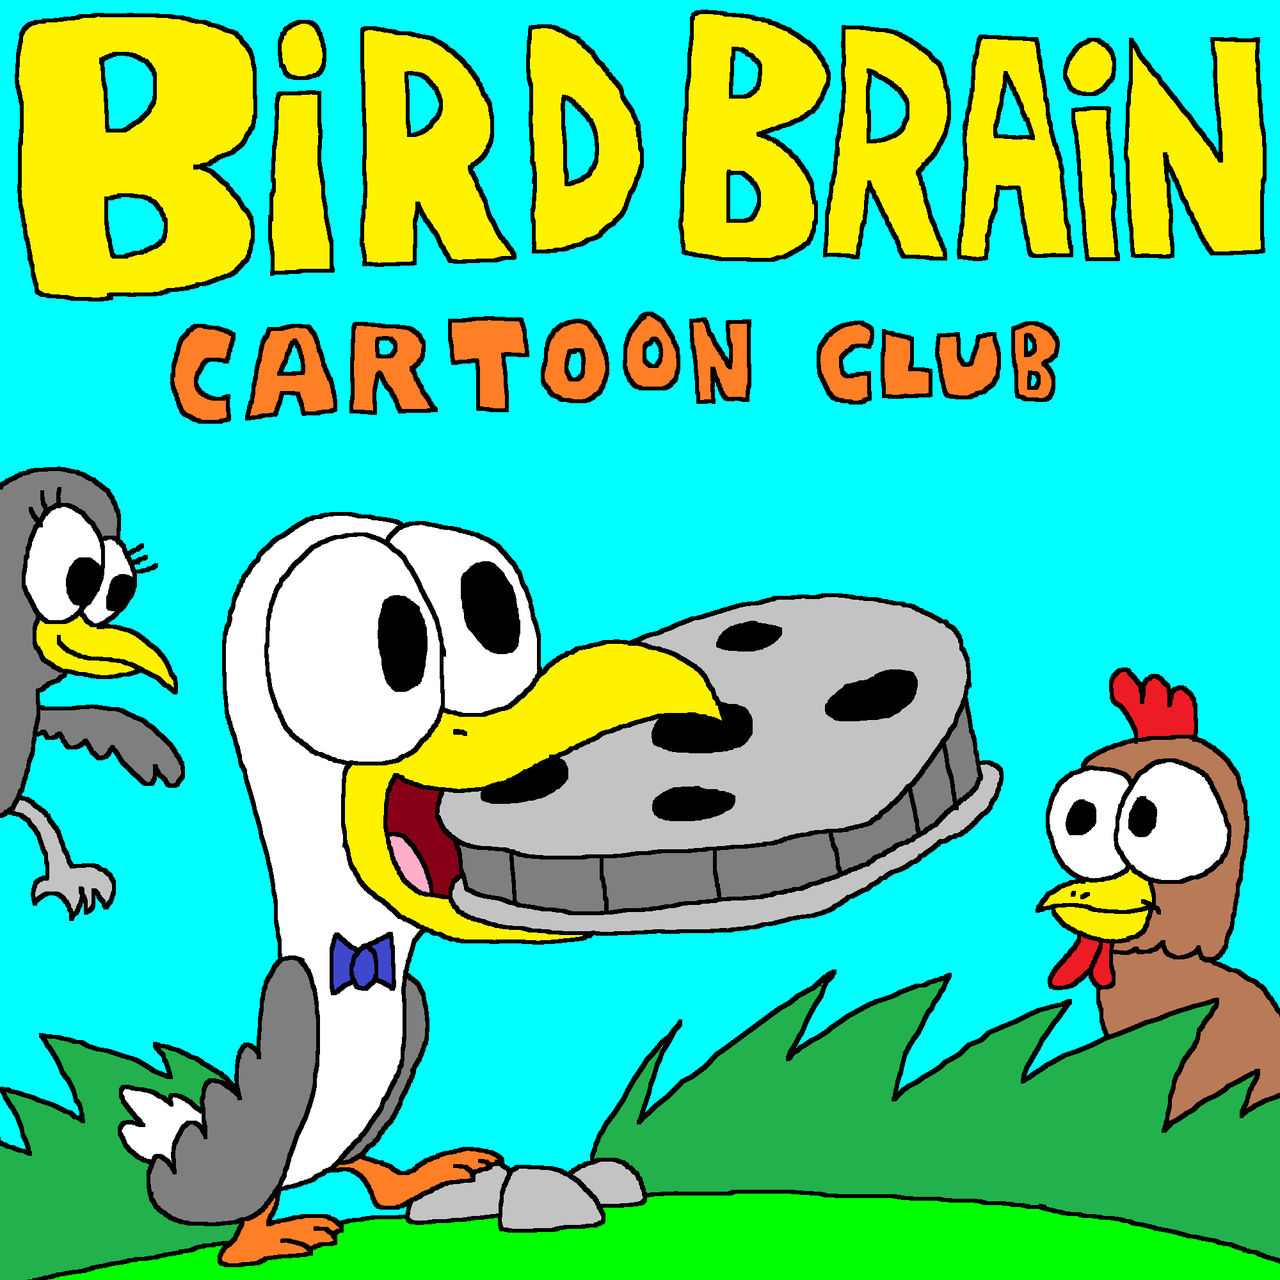 Bird Brain Cartoon Club Poster by MixopolisChannel on DeviantArt